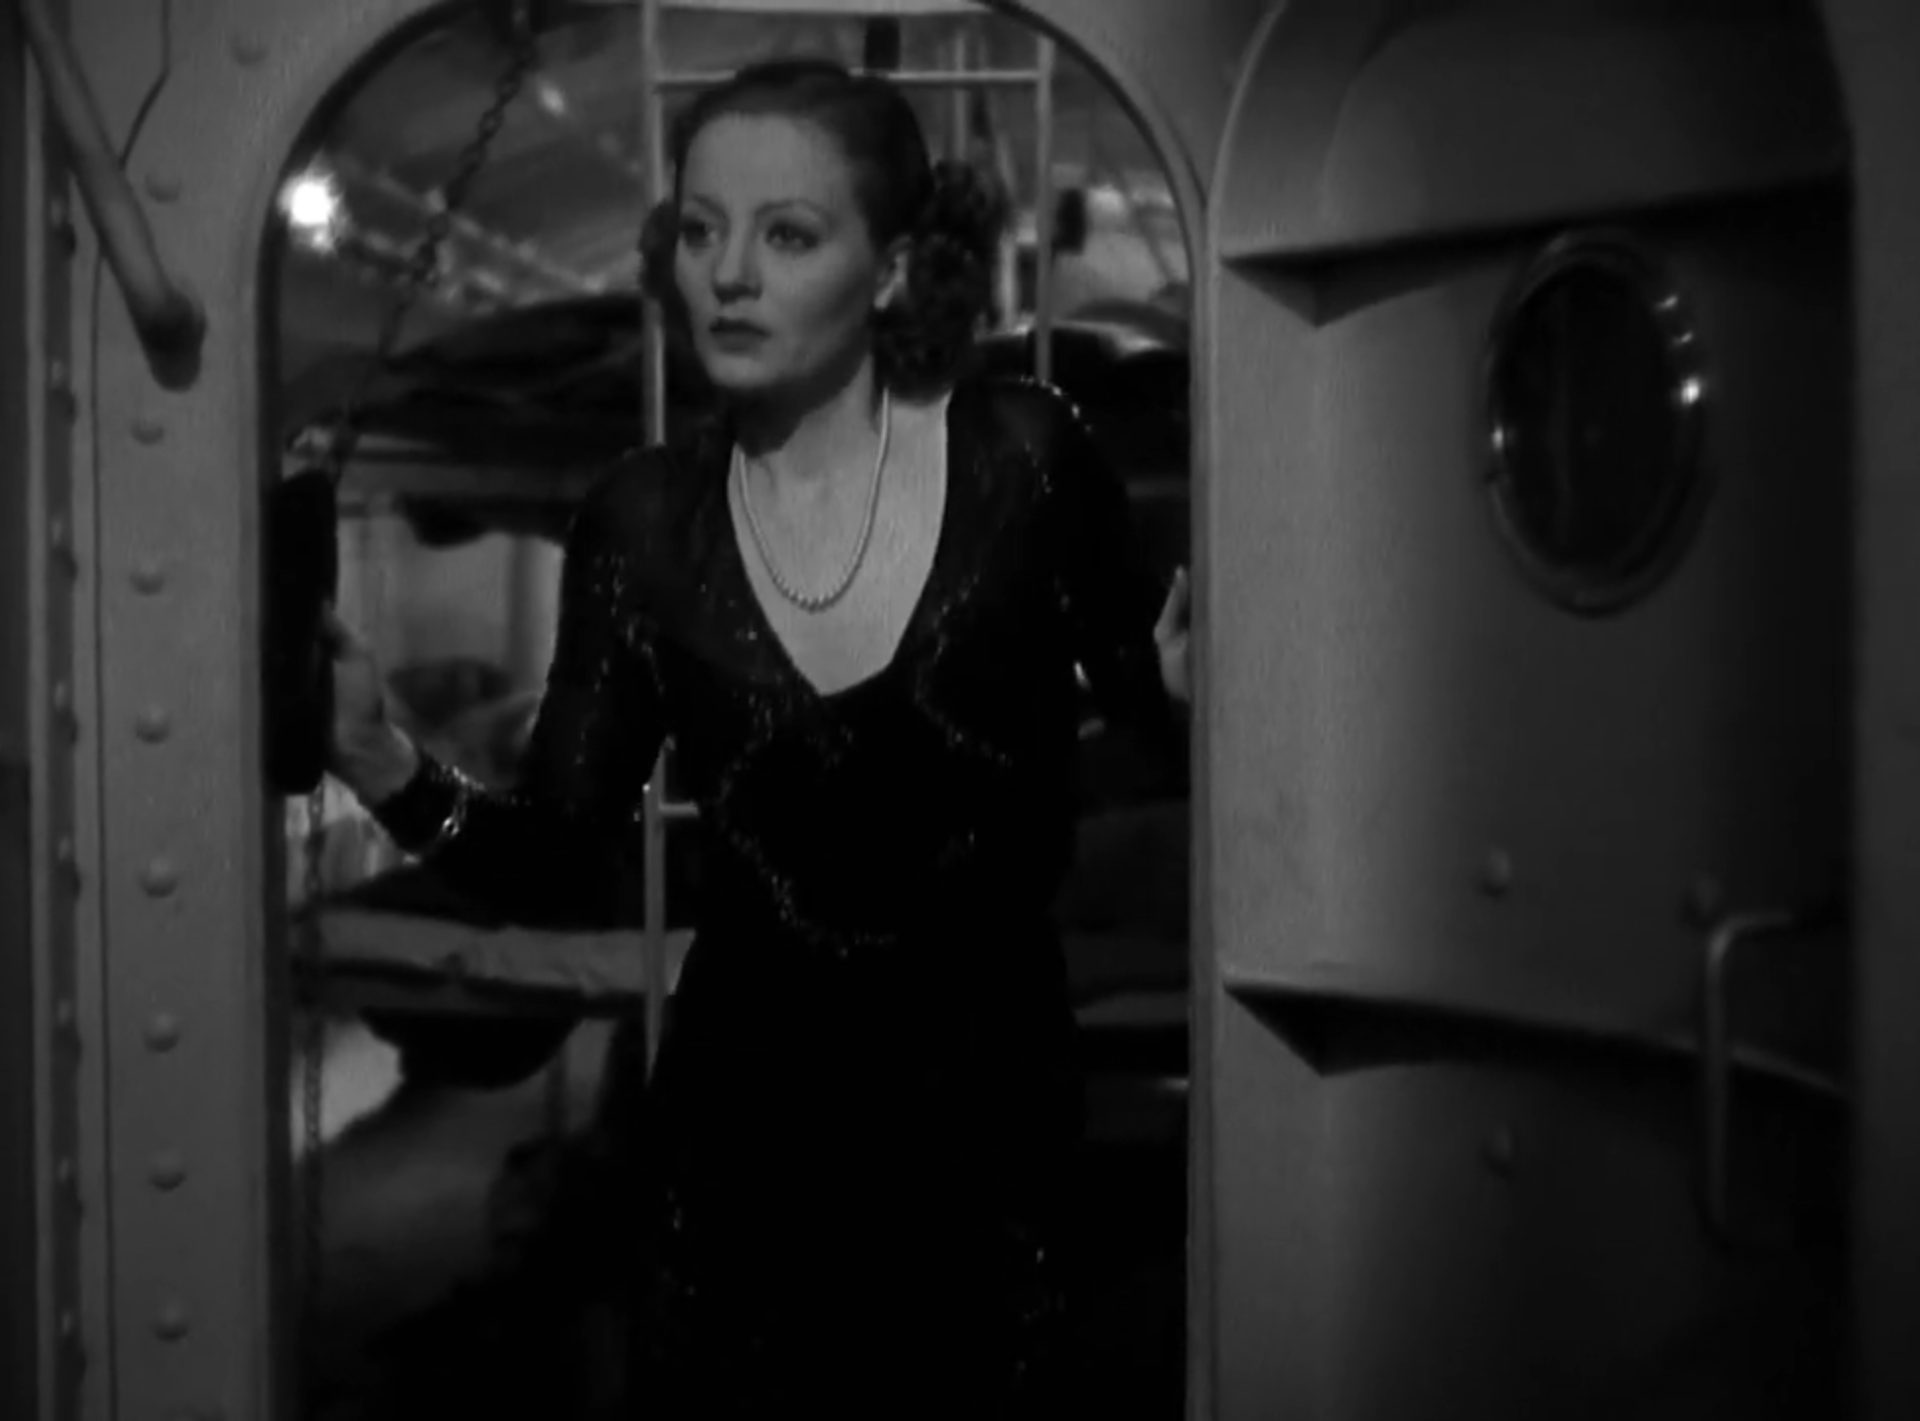 Schwarz-Weiß-Szene mit Tallulah Bankhead im Abendkleid und mit suchendem Blick im Schott eines U-Bootes, im Hintergrund Kojen.